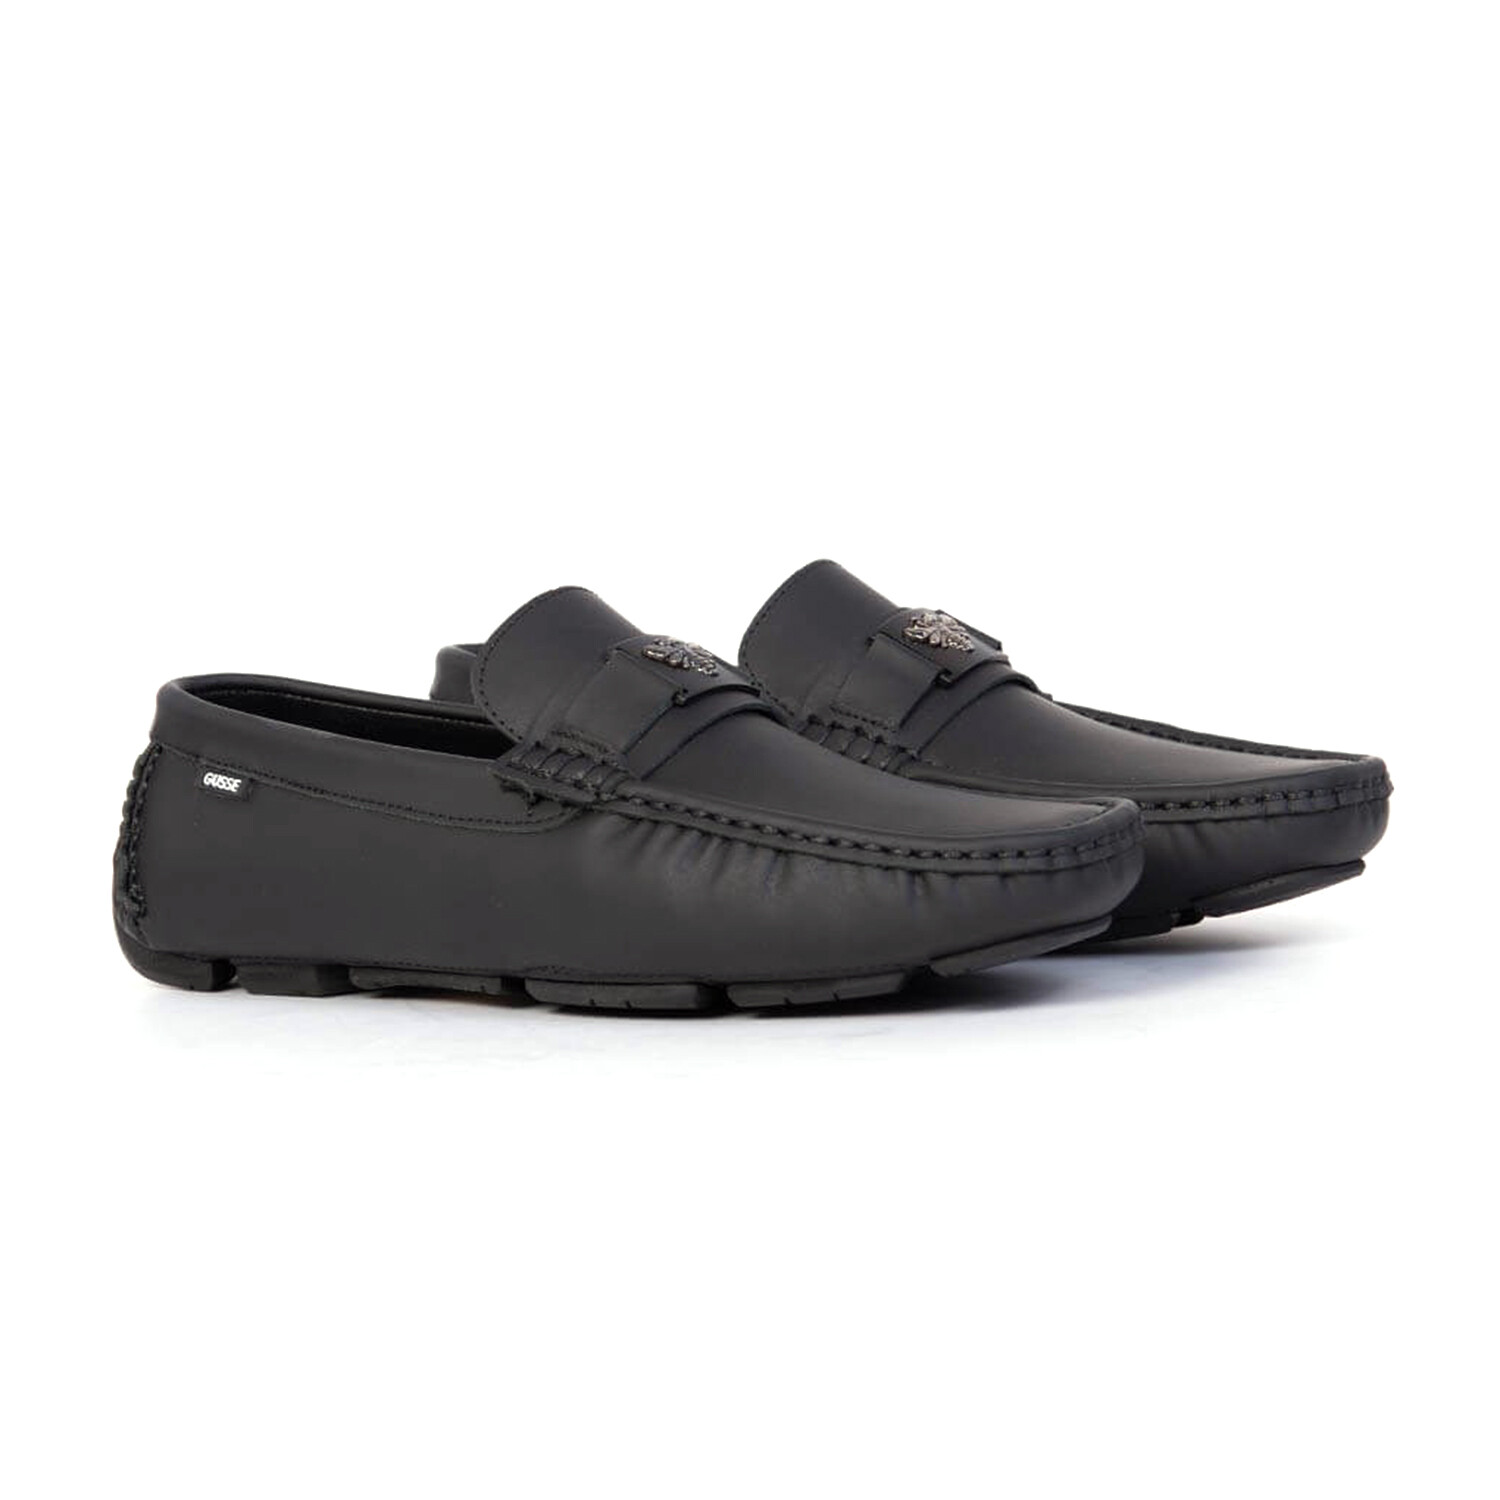 Drake Leather Loafer Shoe // Black (EU Size 40) - Kad Fashion Global ...